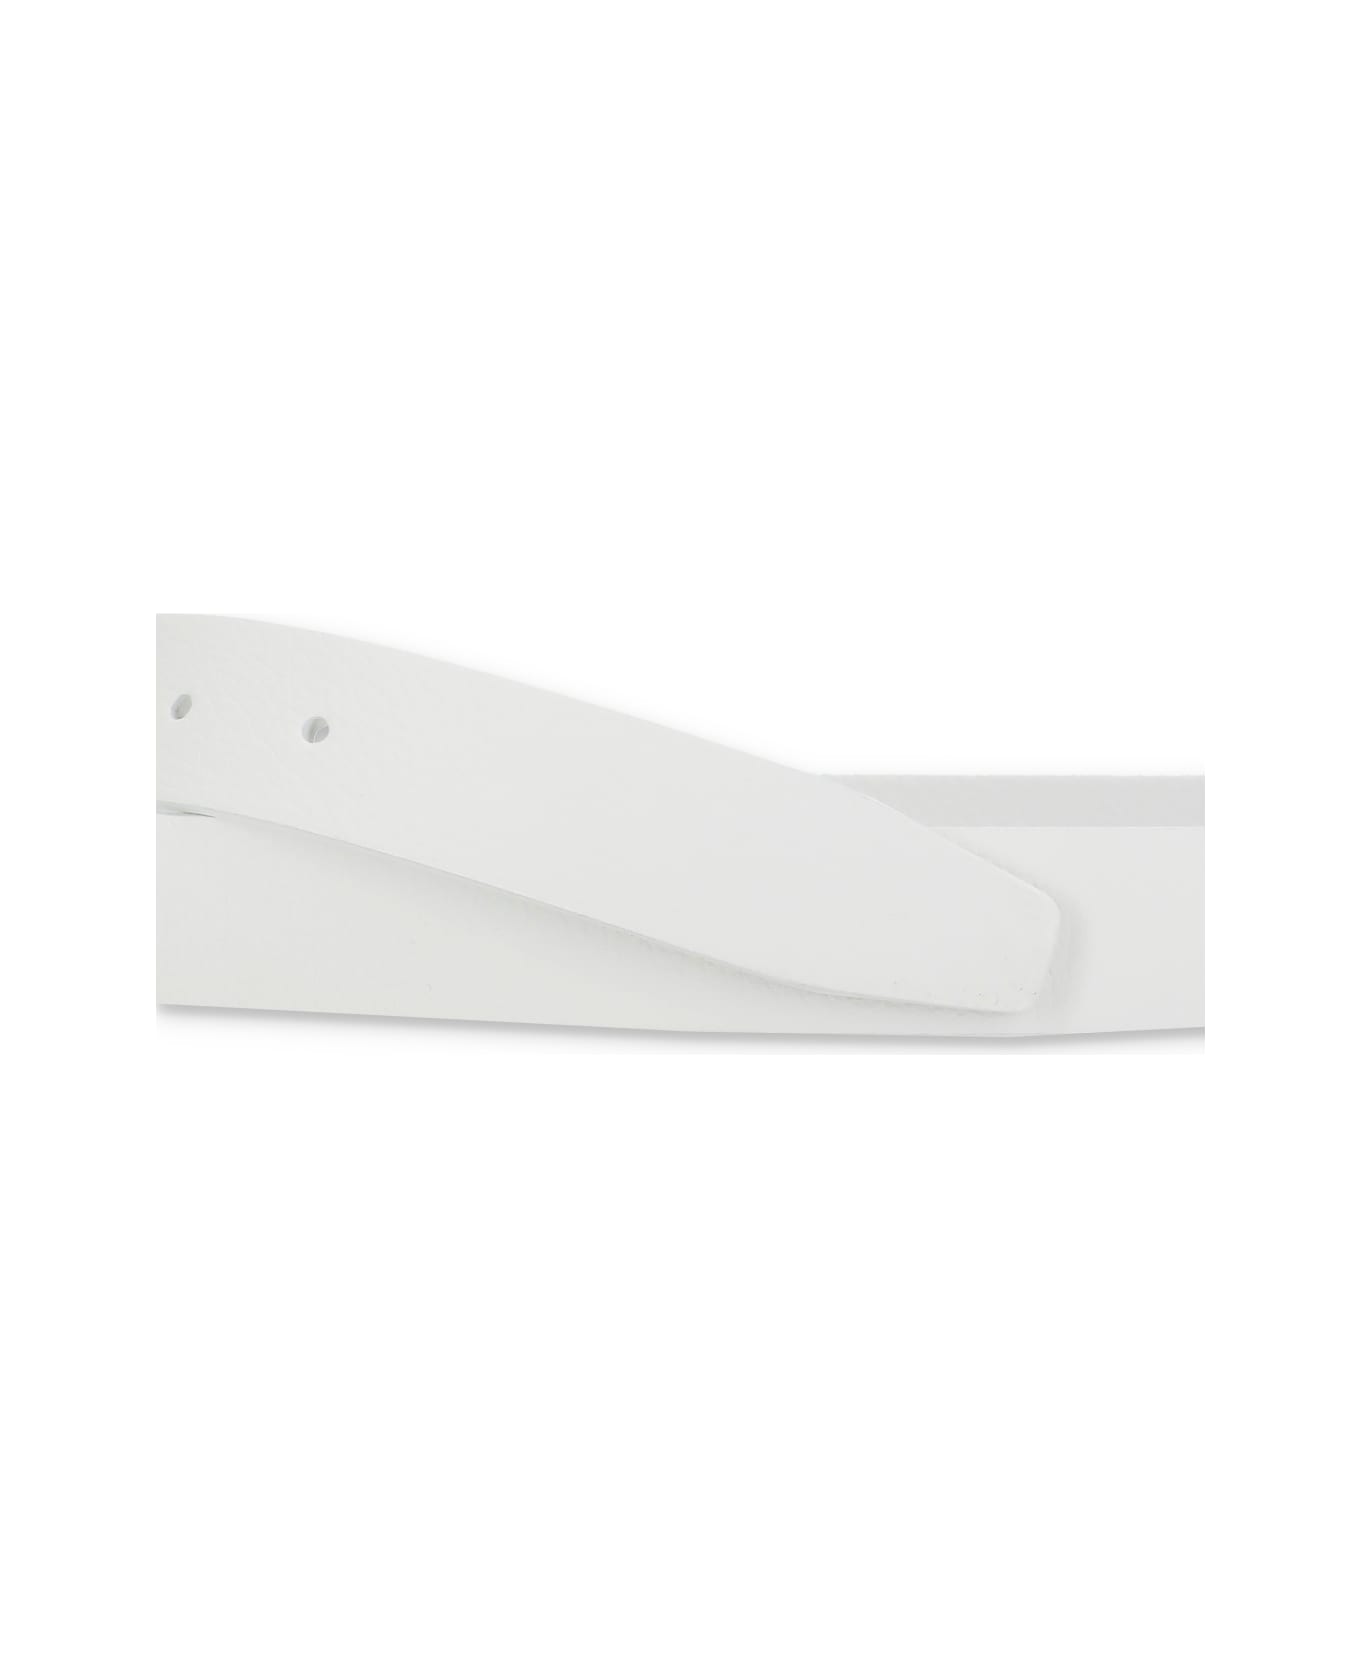 Orciani Leather Belt - White